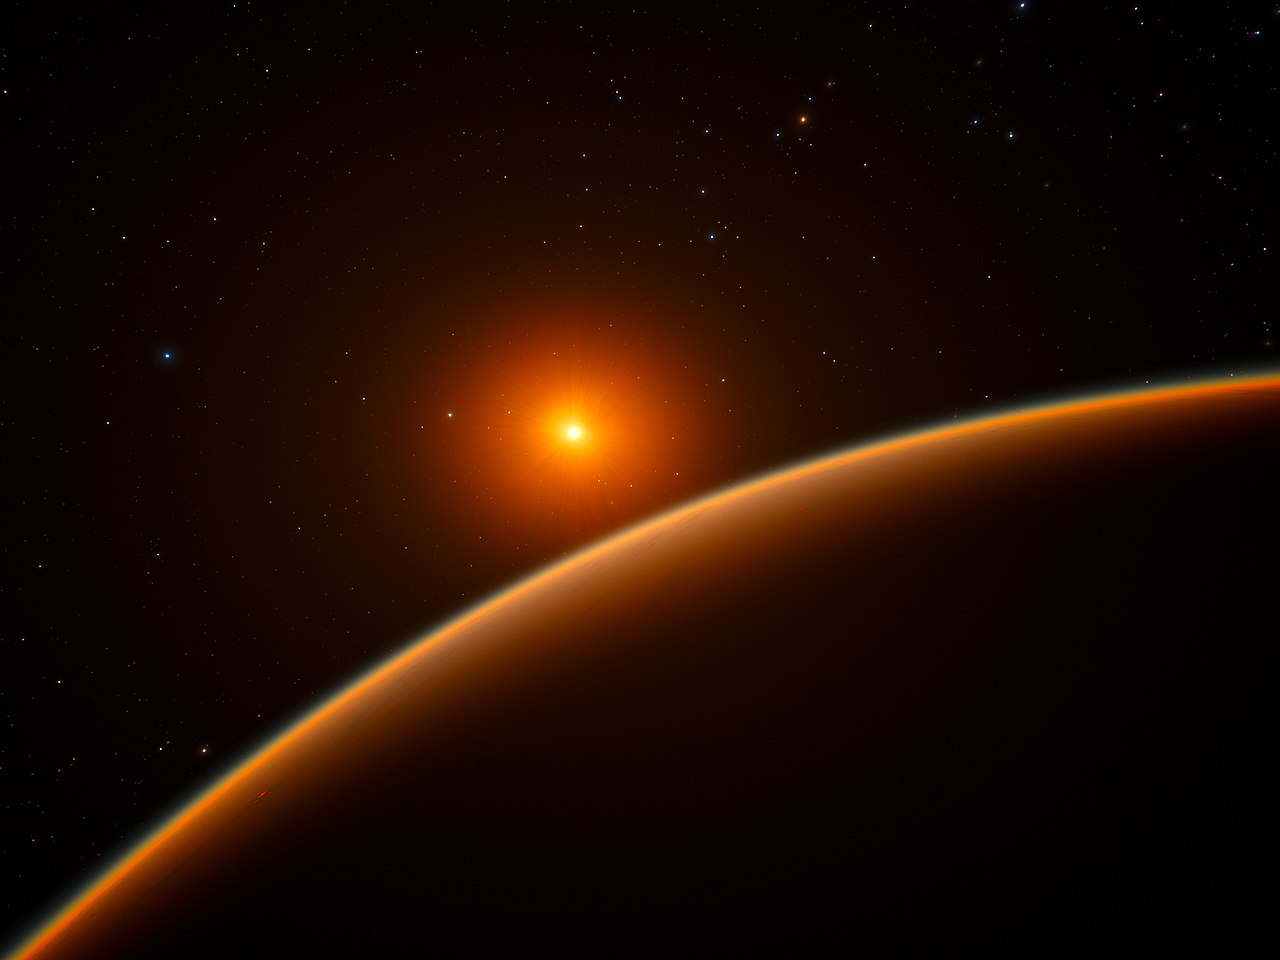 Umjetnički prikaz planeta LHS 1140b (©ESO, spaceengine.org).